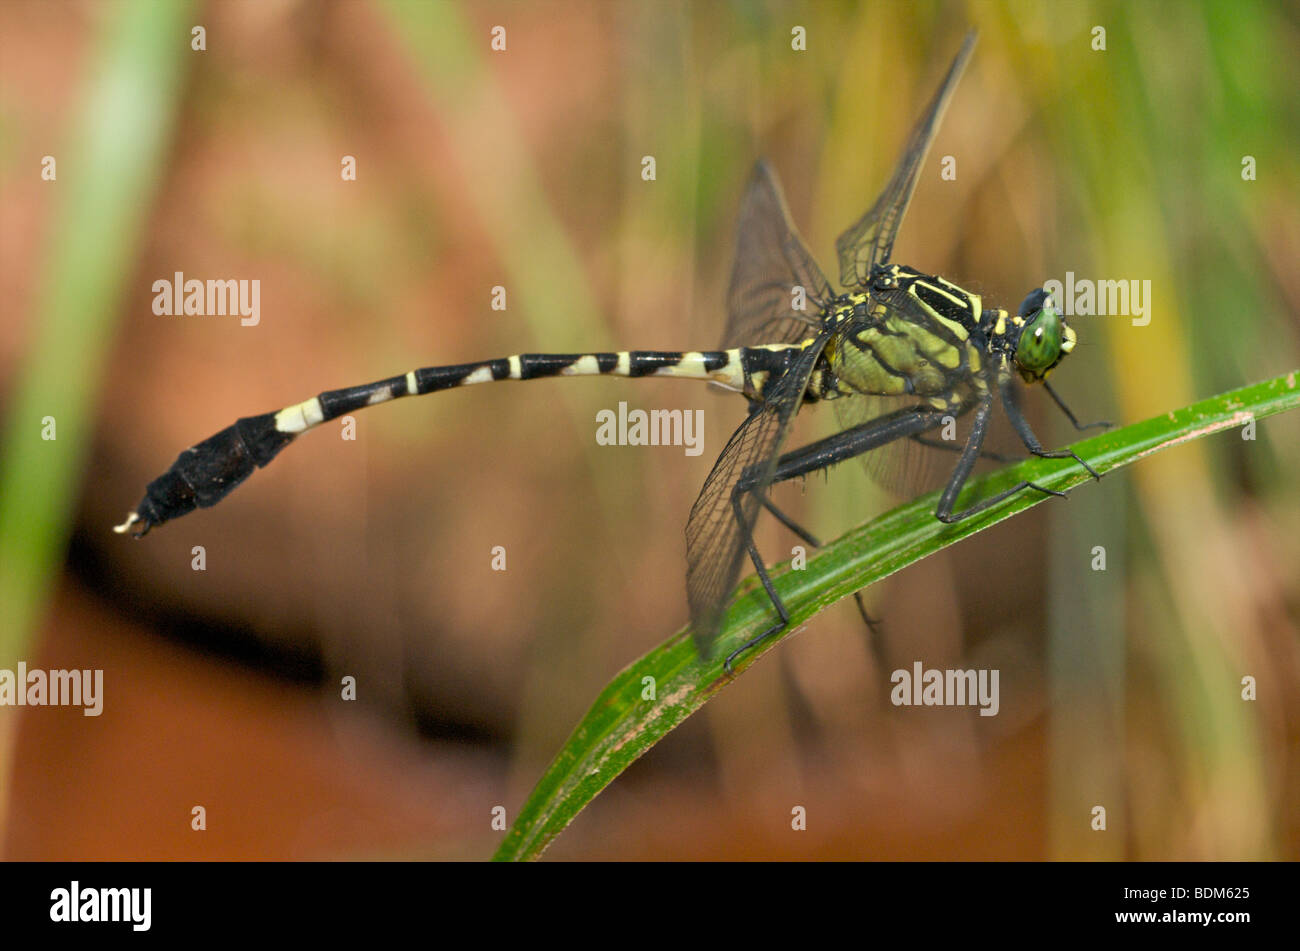 Chinesische Clubtail Libelle Stockfoto